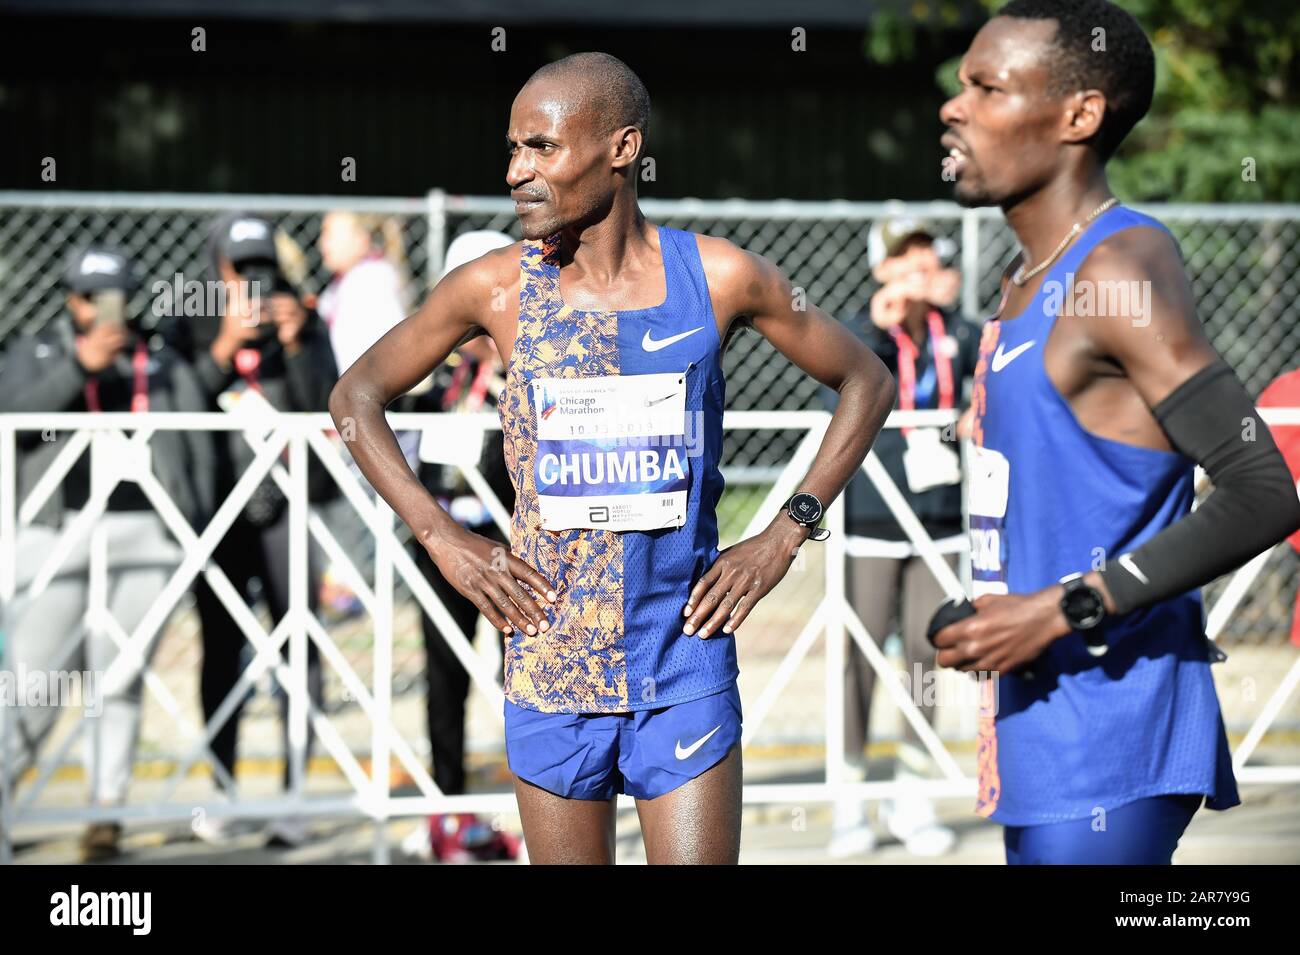 Chicago, Illinois, USA. Dickson Chumba aus Kenia blickt auf die Ziellinie zurück, die er gerade beim Chicago-Marathon 2019 überquert hatte. Stockfoto